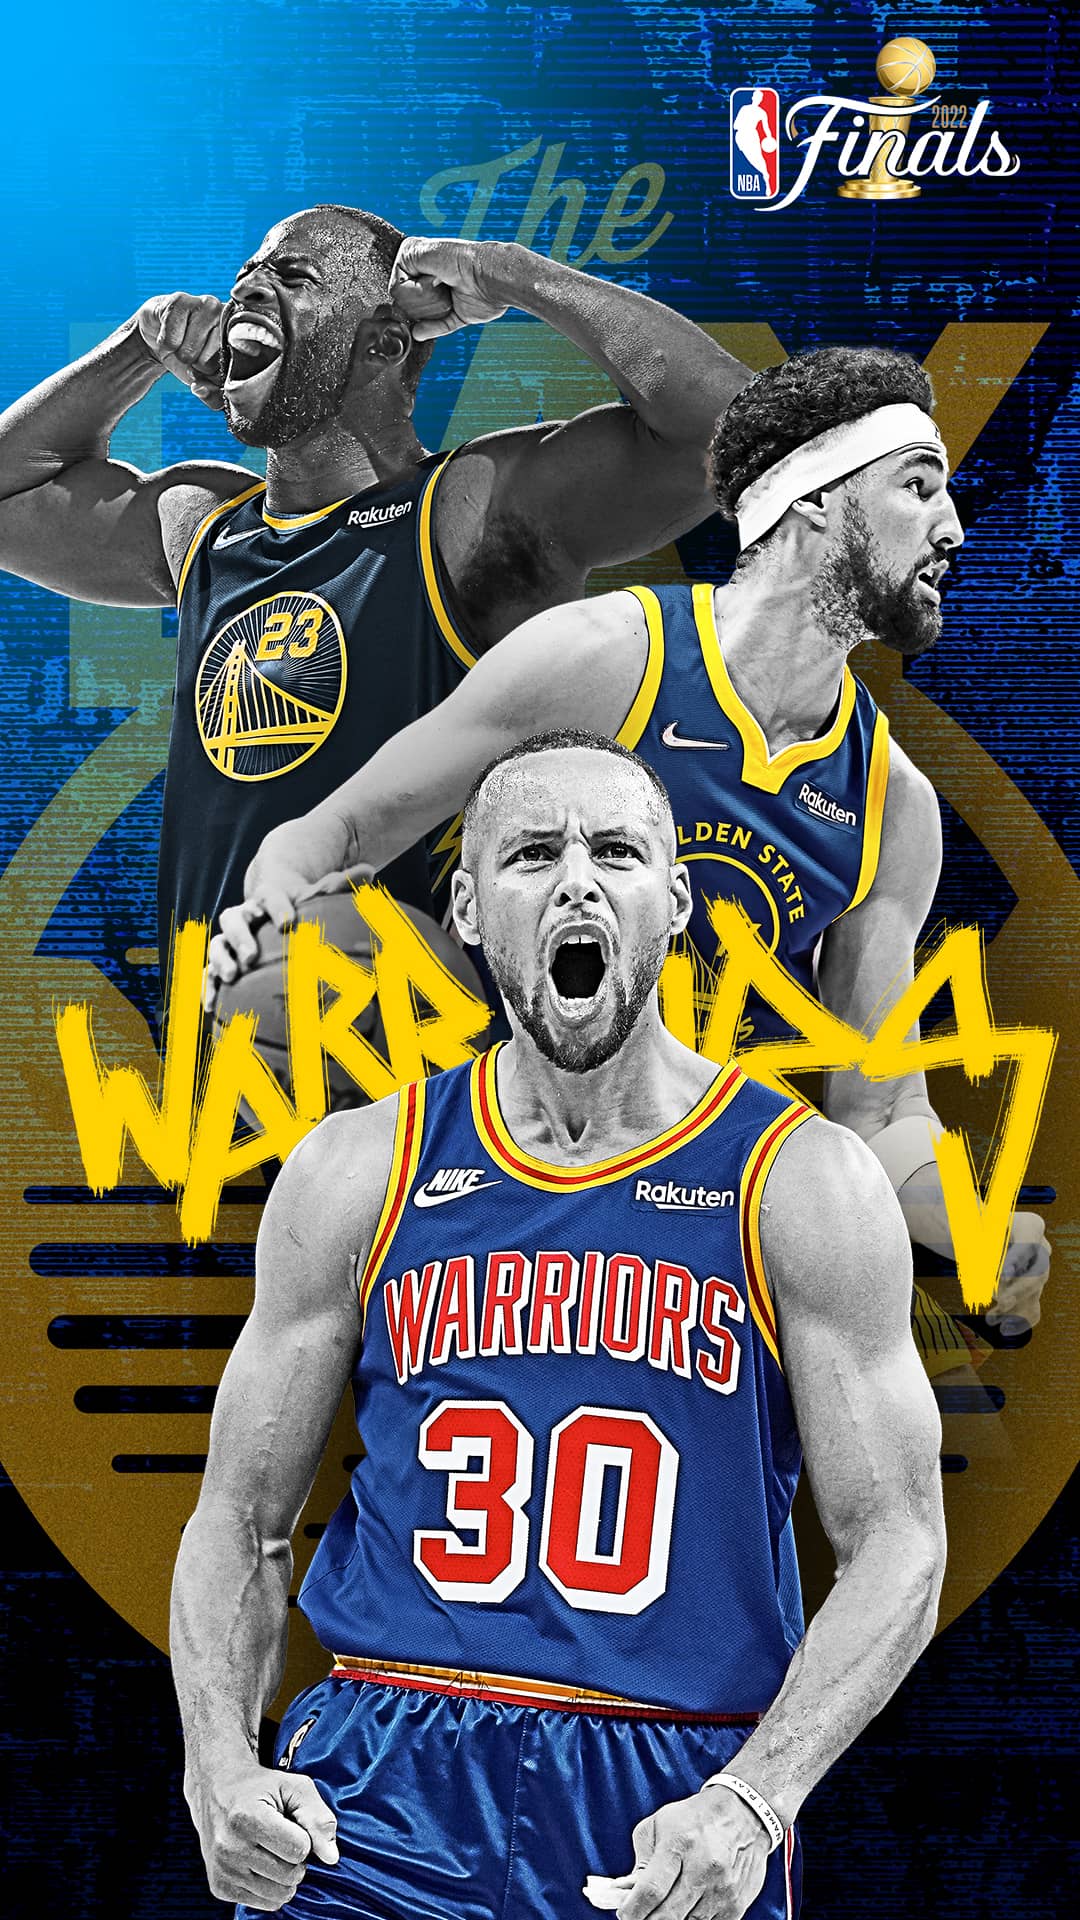 100 Best Golden state warriors wallpaper ideas  golden state warriors  wallpaper, curry basketball, golden state warriors